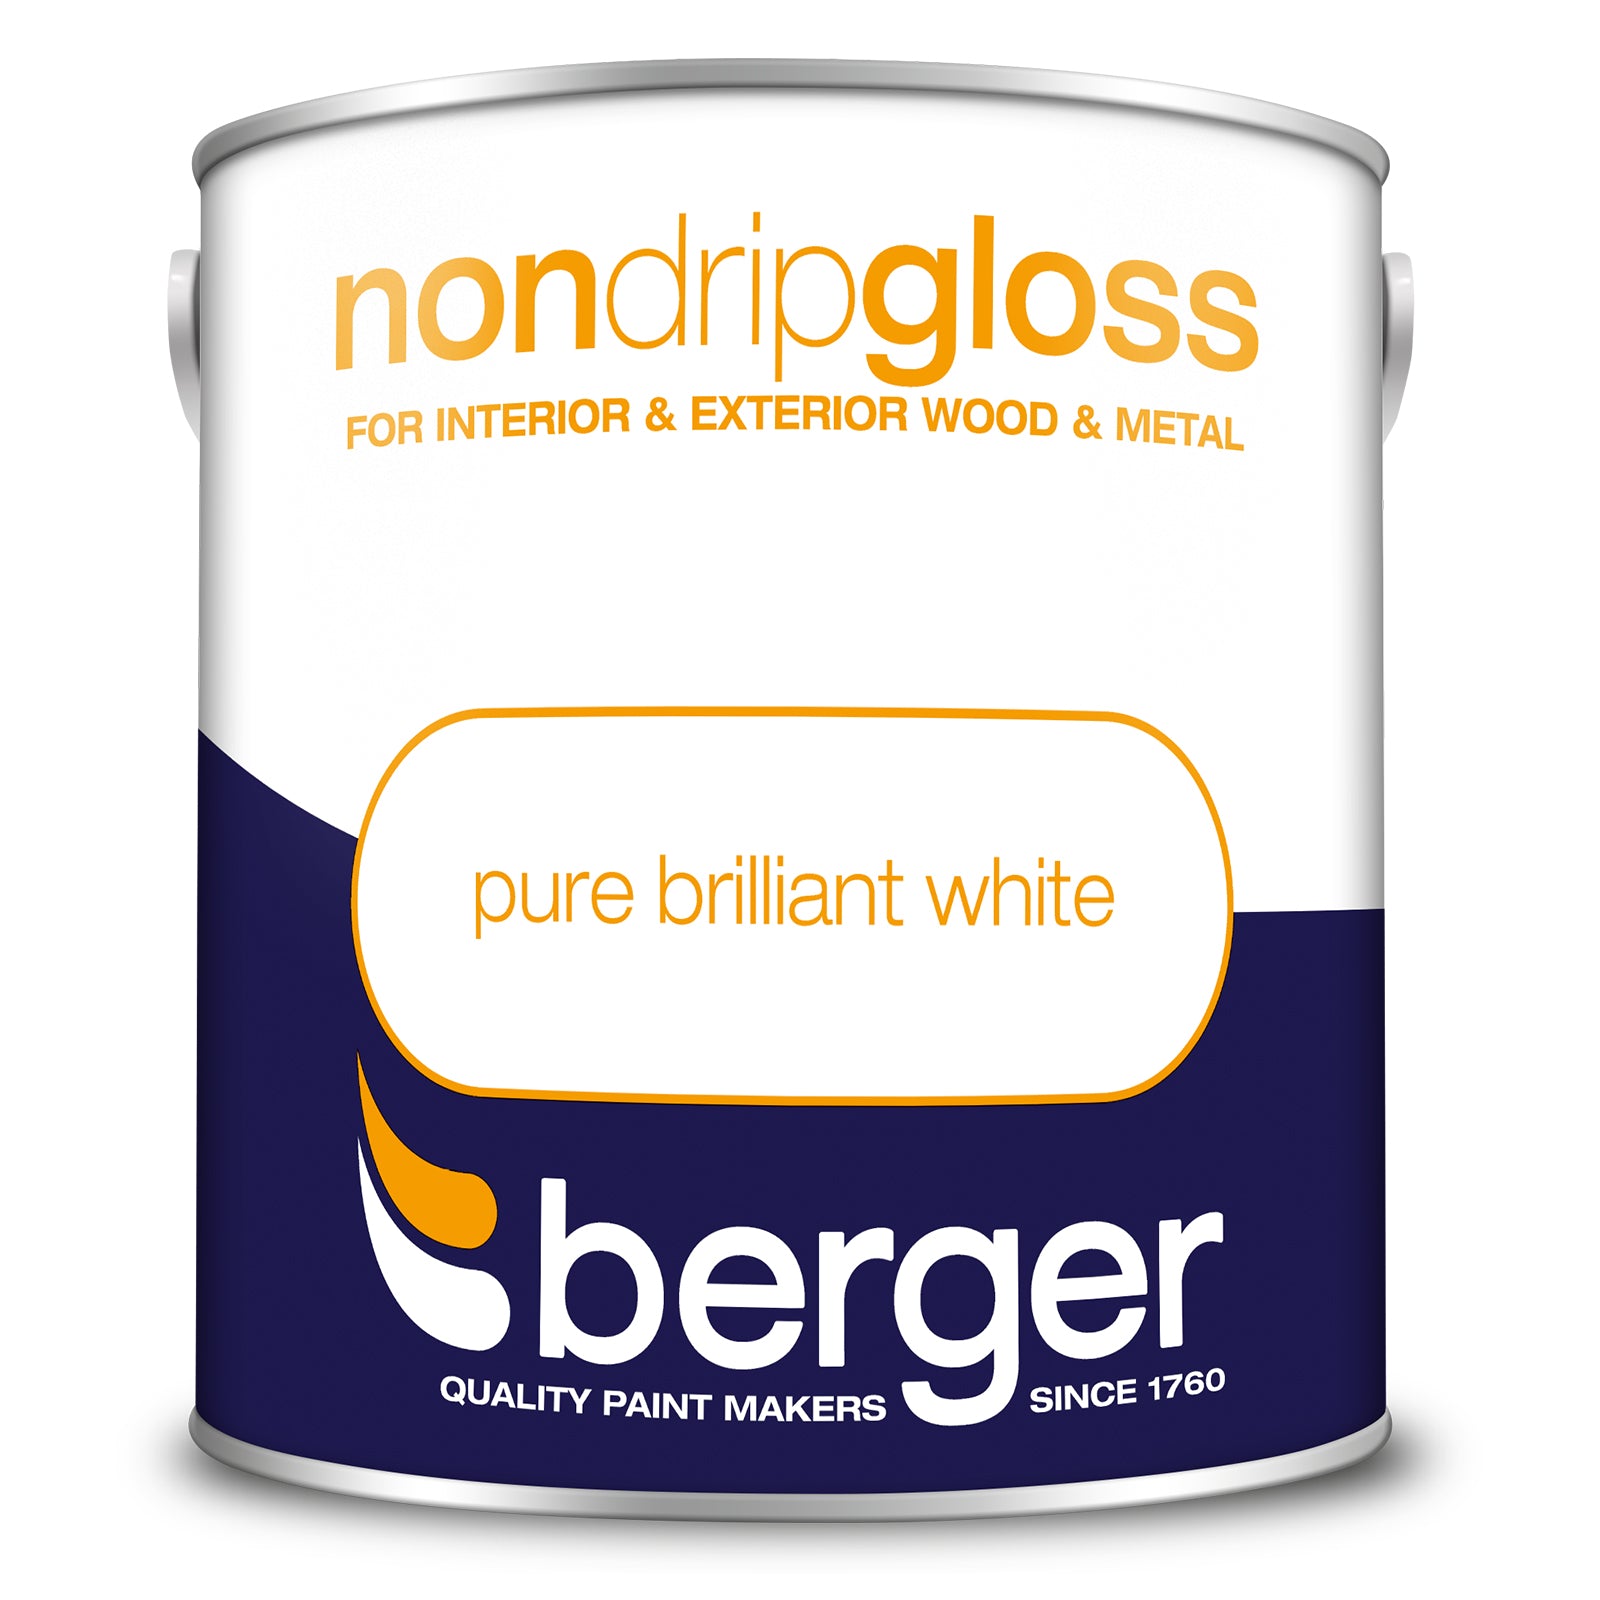 Berger Non Drip Gloss Pure Brilliant White 2.5L